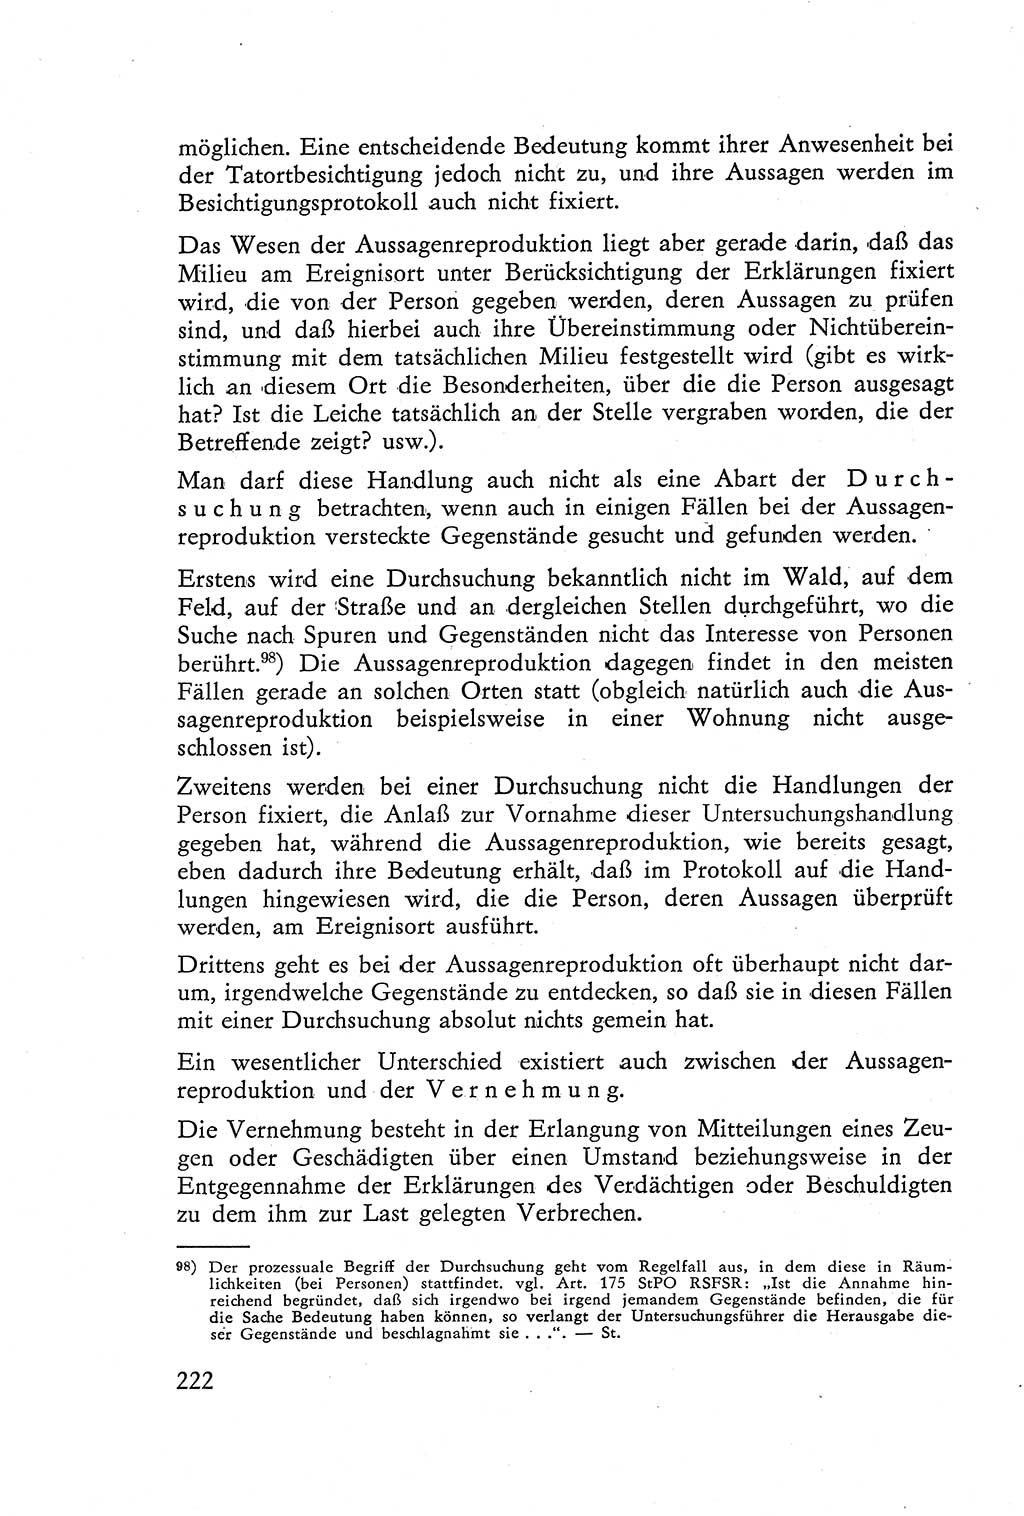 Die Vernehmung [Deutsche Demokratische Republik (DDR)] 1960, Seite 222 (Vern. DDR 1960, S. 222)